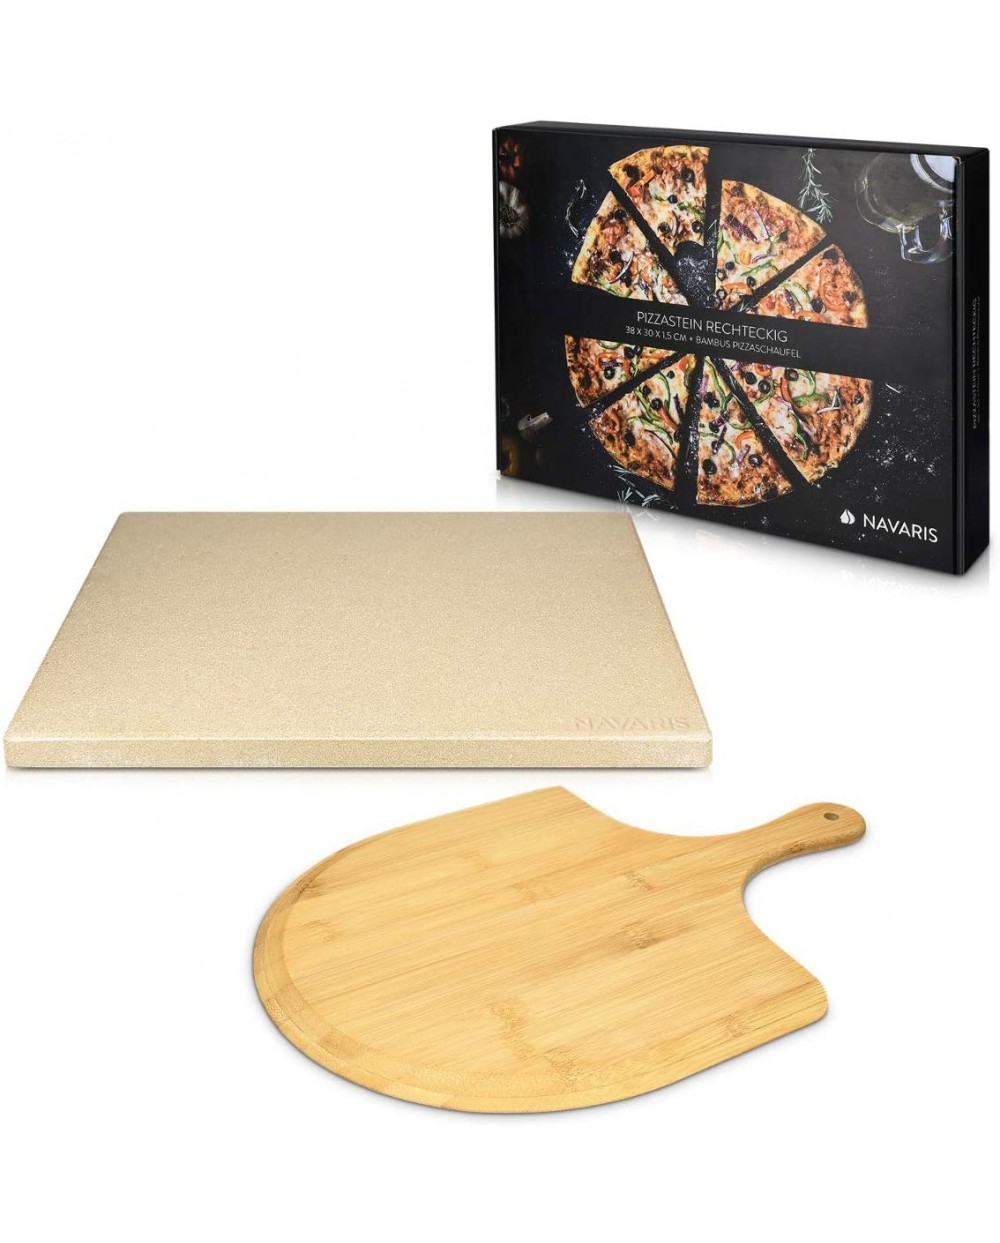 Achat Pierre à pizza XL 38 x 30 cm + Pelle en bambou